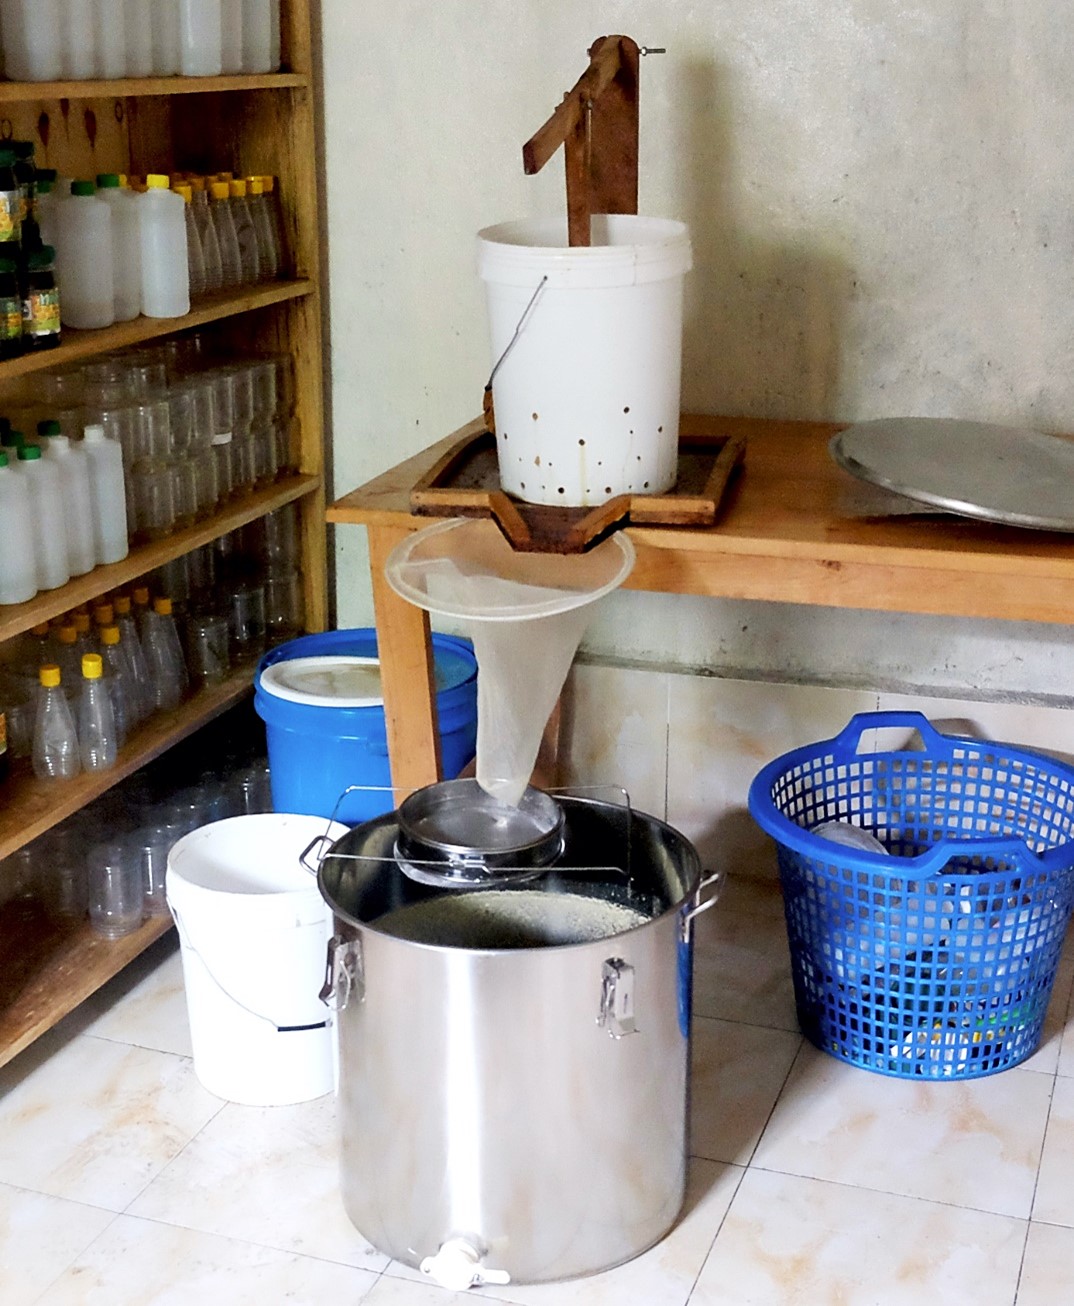 Extraction du miel par pressage - Pressoir à miel de Goma (RDC)